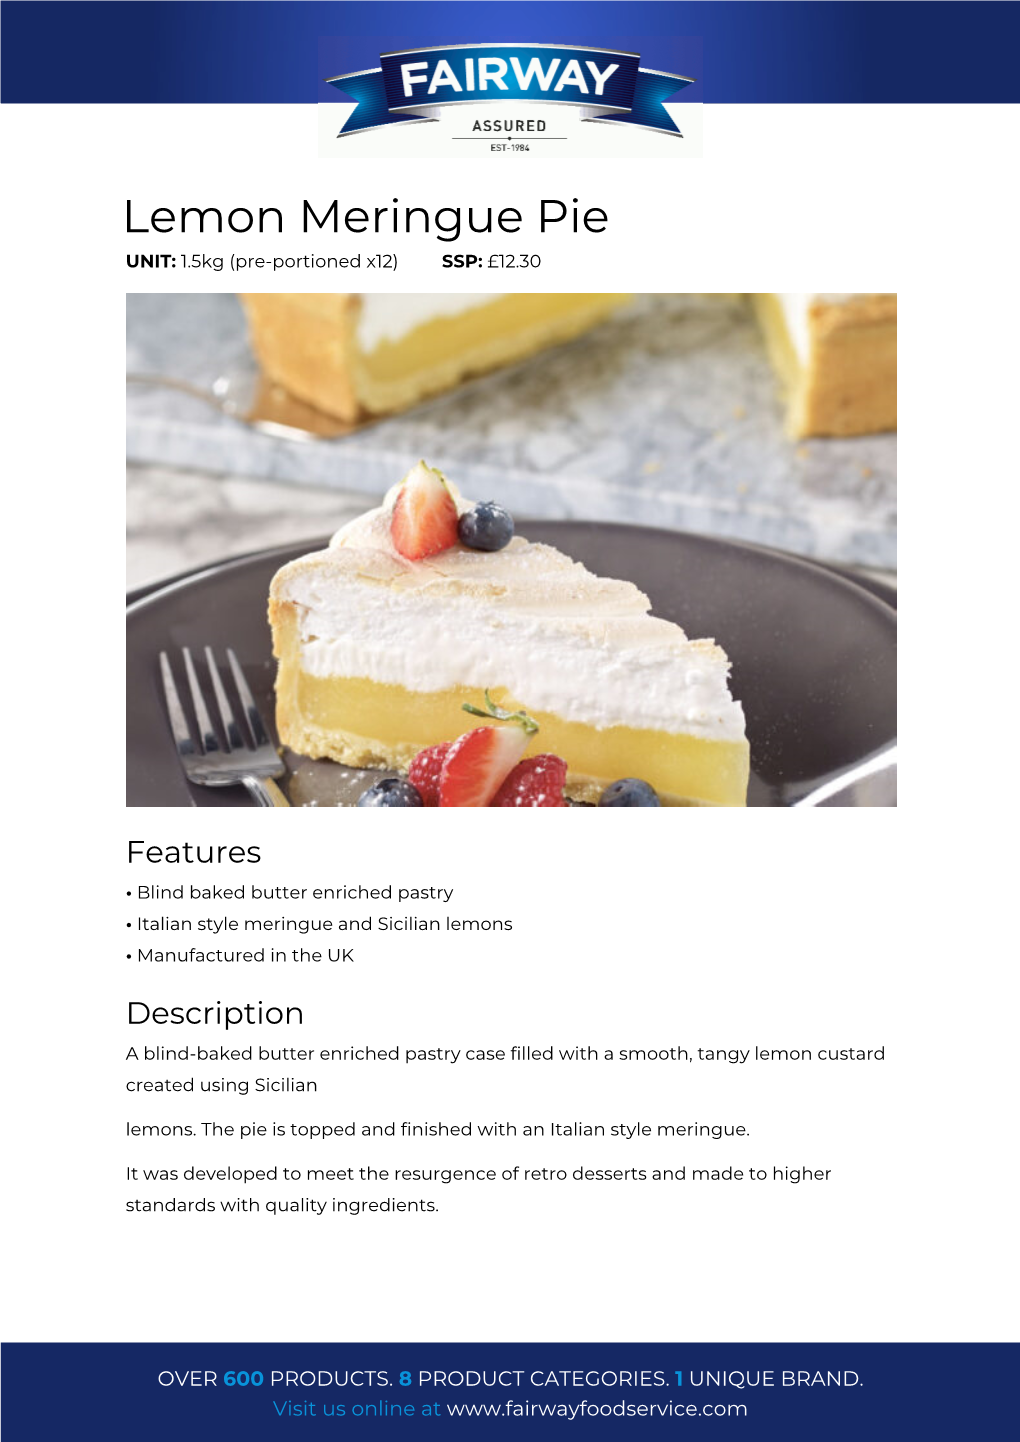 Lemon Meringue Pie UNIT: 1.5Kg (Pre-Portioned X12) SSP: £12.30